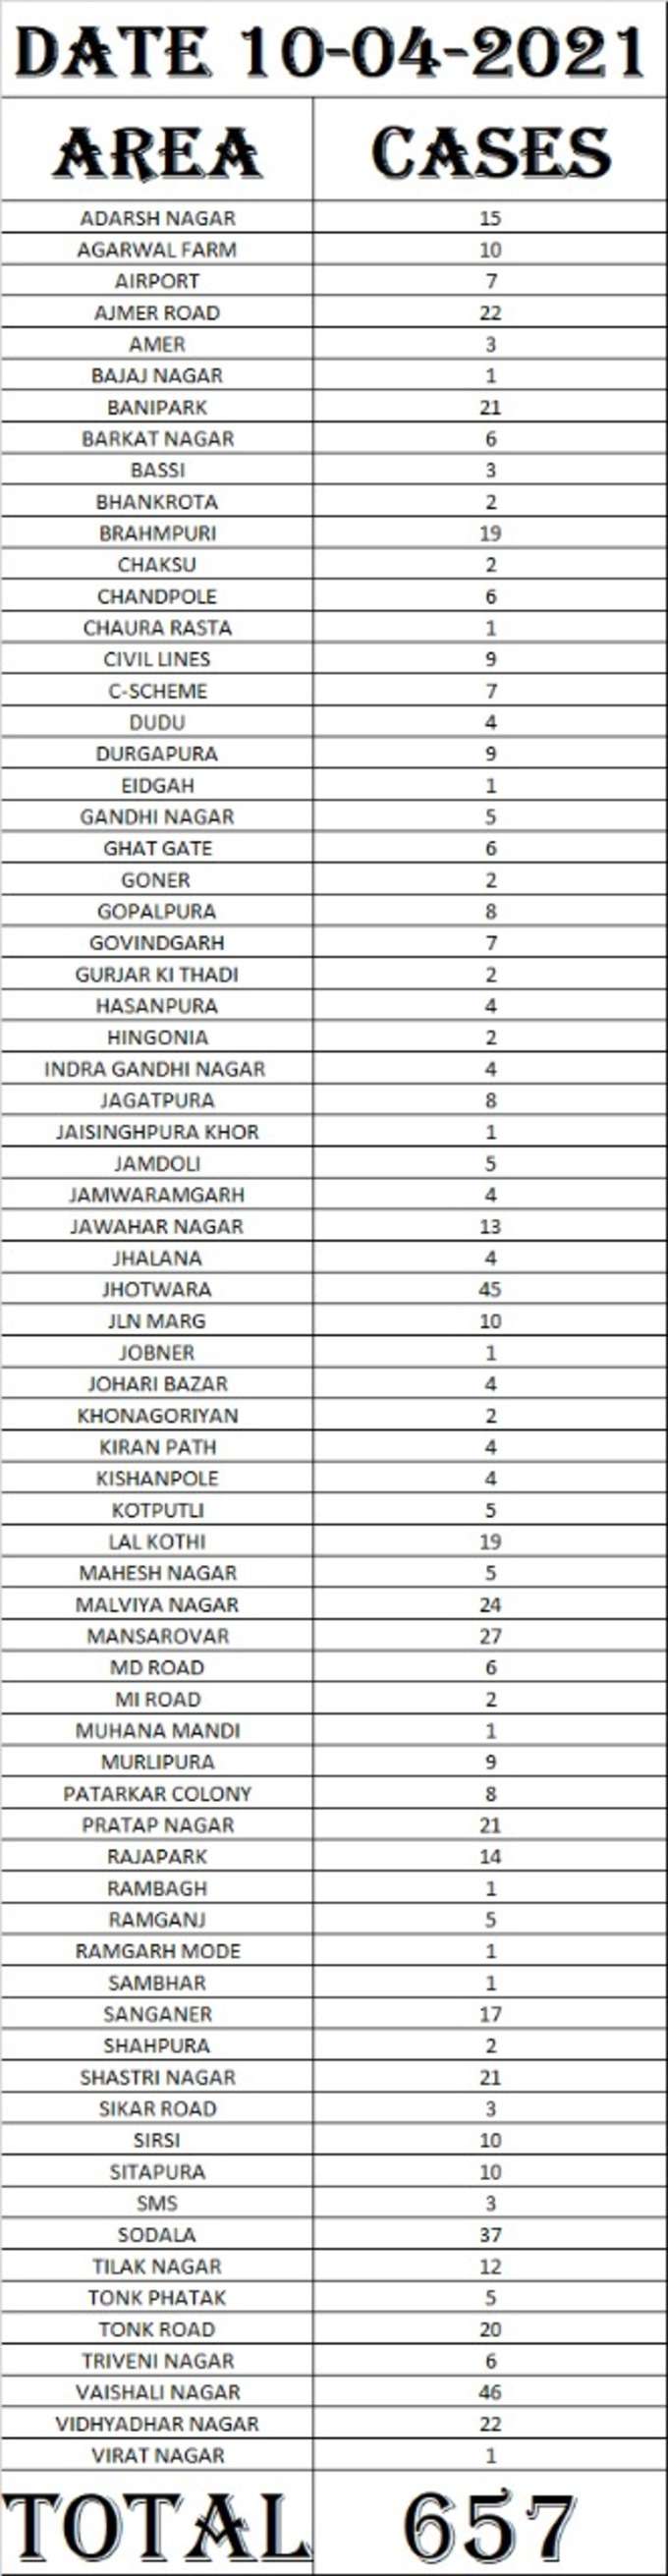 जयपुर में क्षेत्रवार कोरोना संक्रमण का आंकड़ा